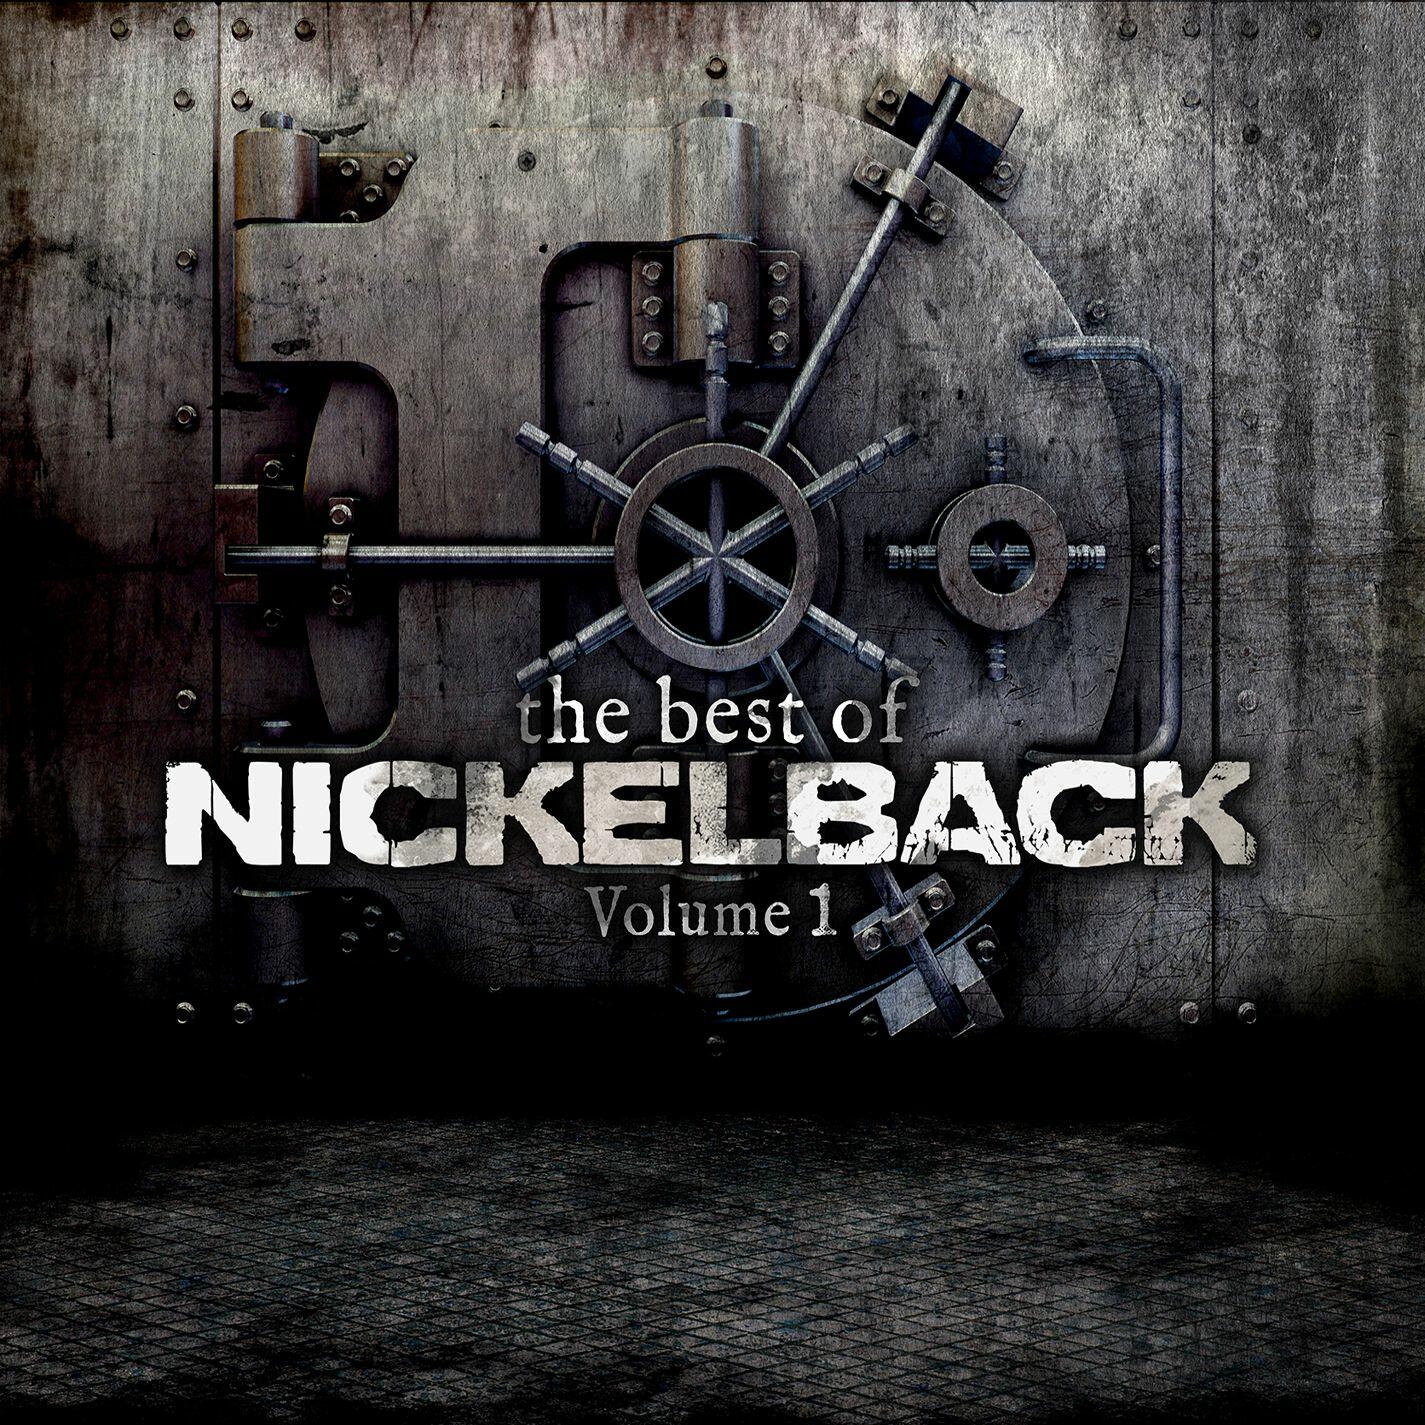 Listen Free to Nickelback - The Best Of Nickelback Volume 1 Radio on ...
